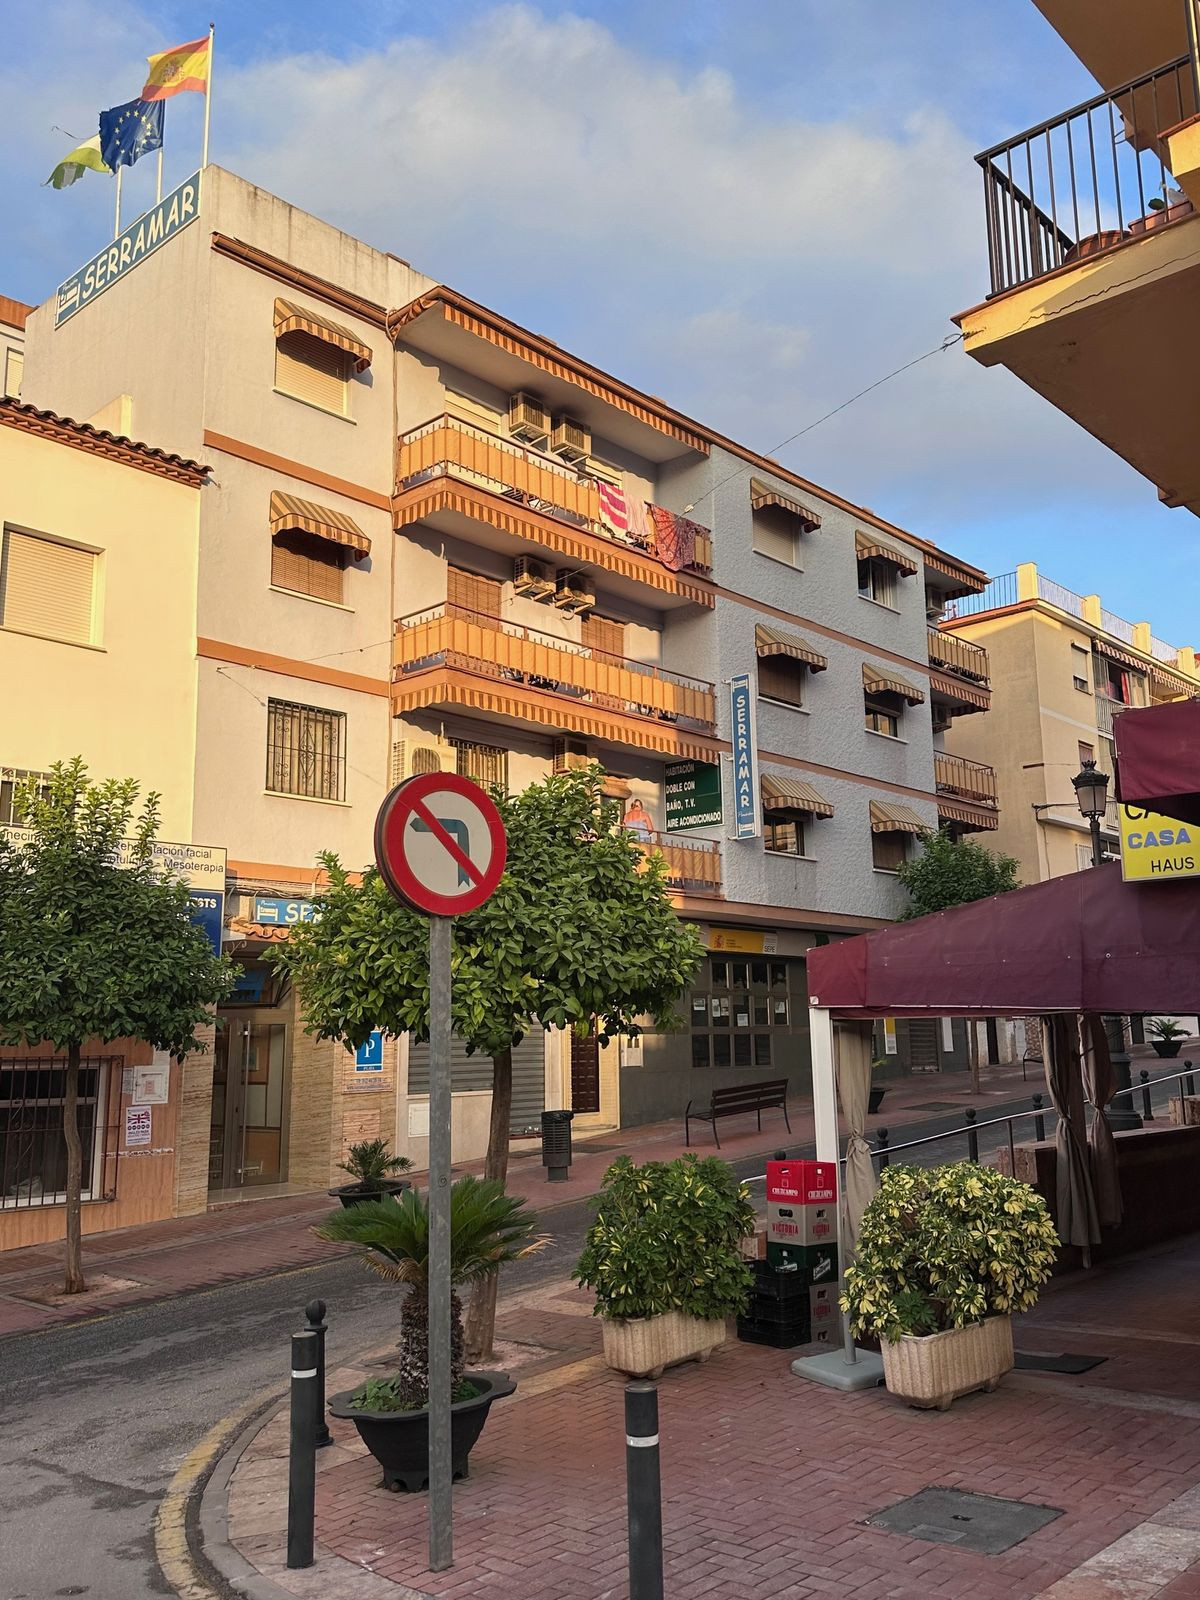 						Commercial  Hotel
													for sale 
																			 in Arroyo de la Miel
					